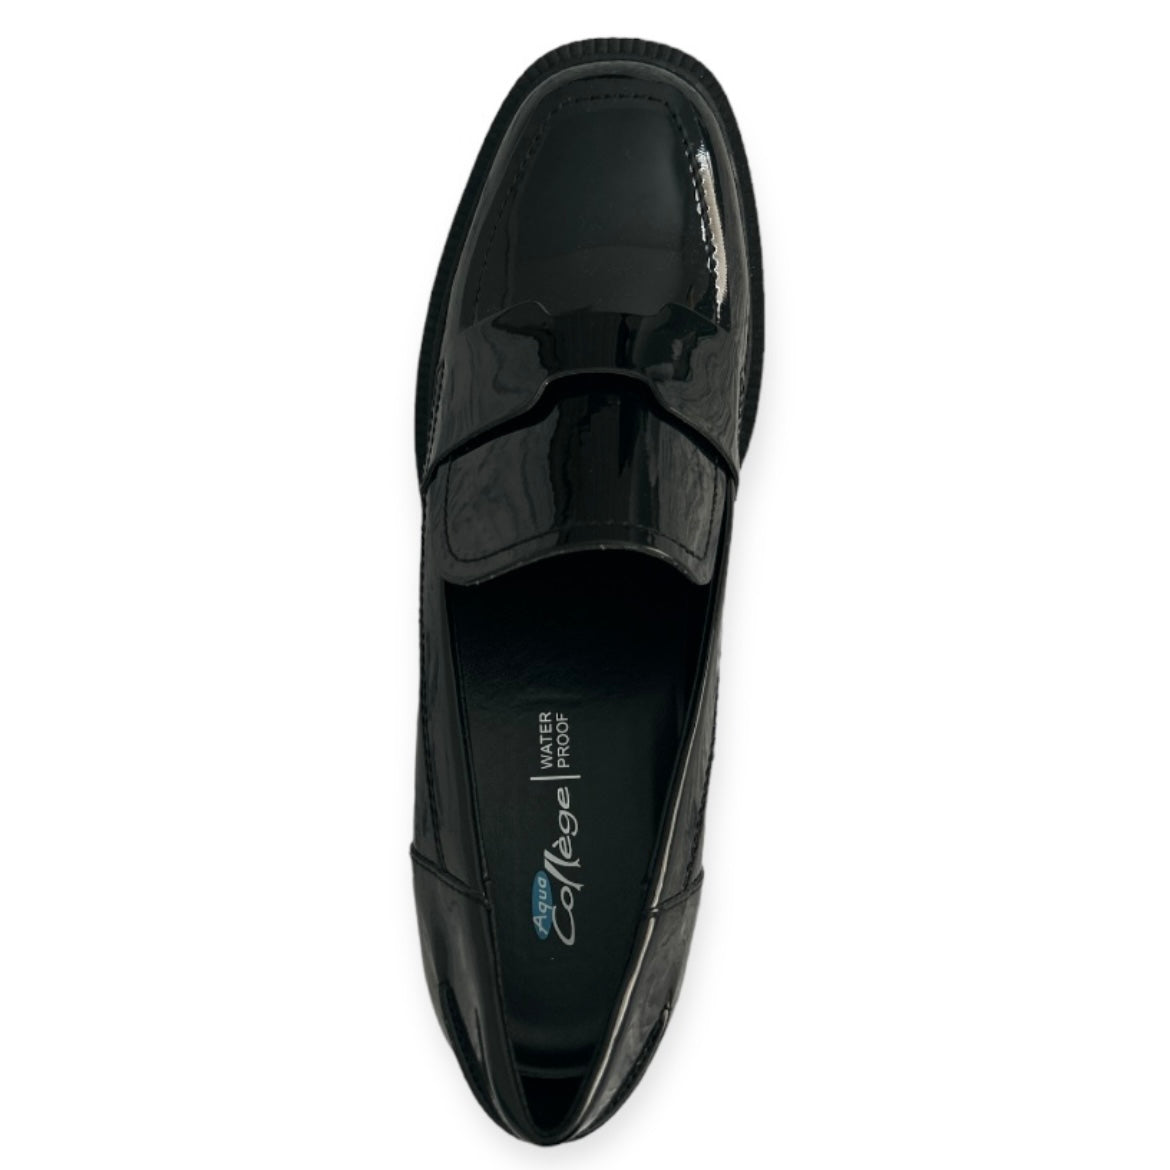 JONNIE Waterproof Block Heel Loafers Black Women's Shoes